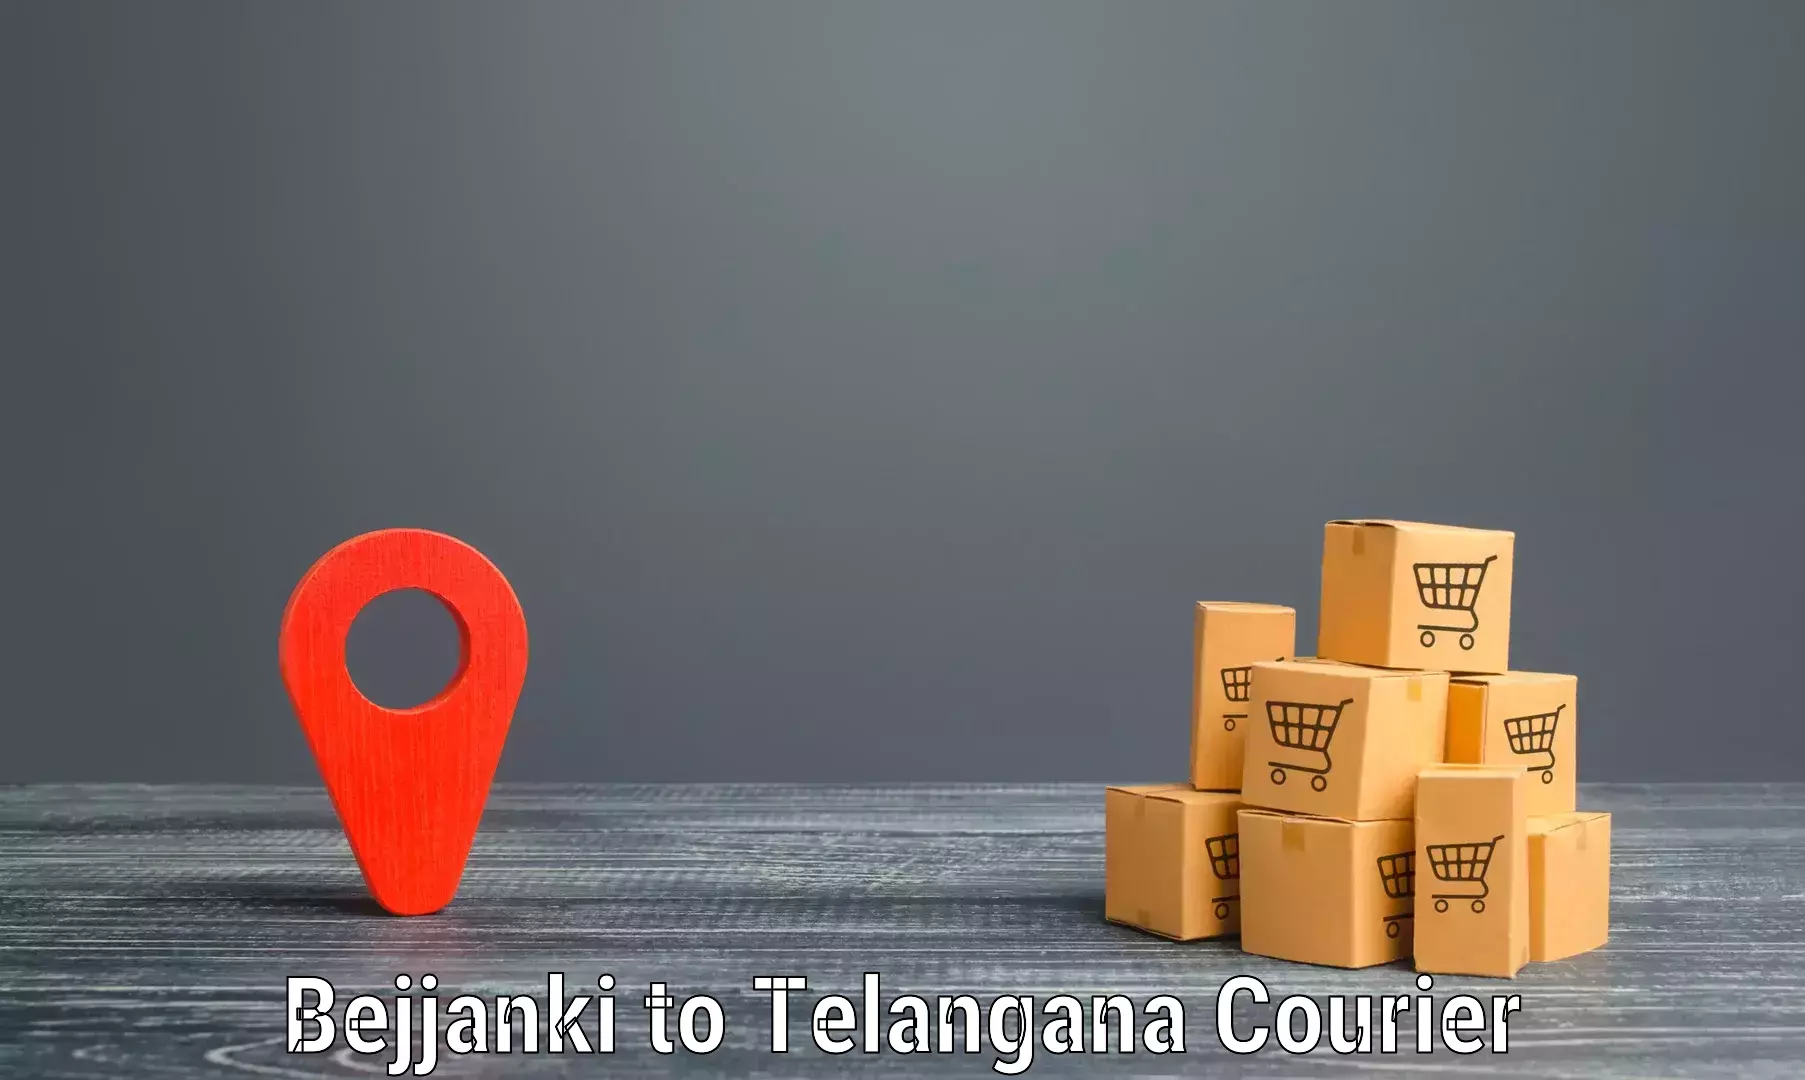 Retail shipping solutions Bejjanki to Yellareddy